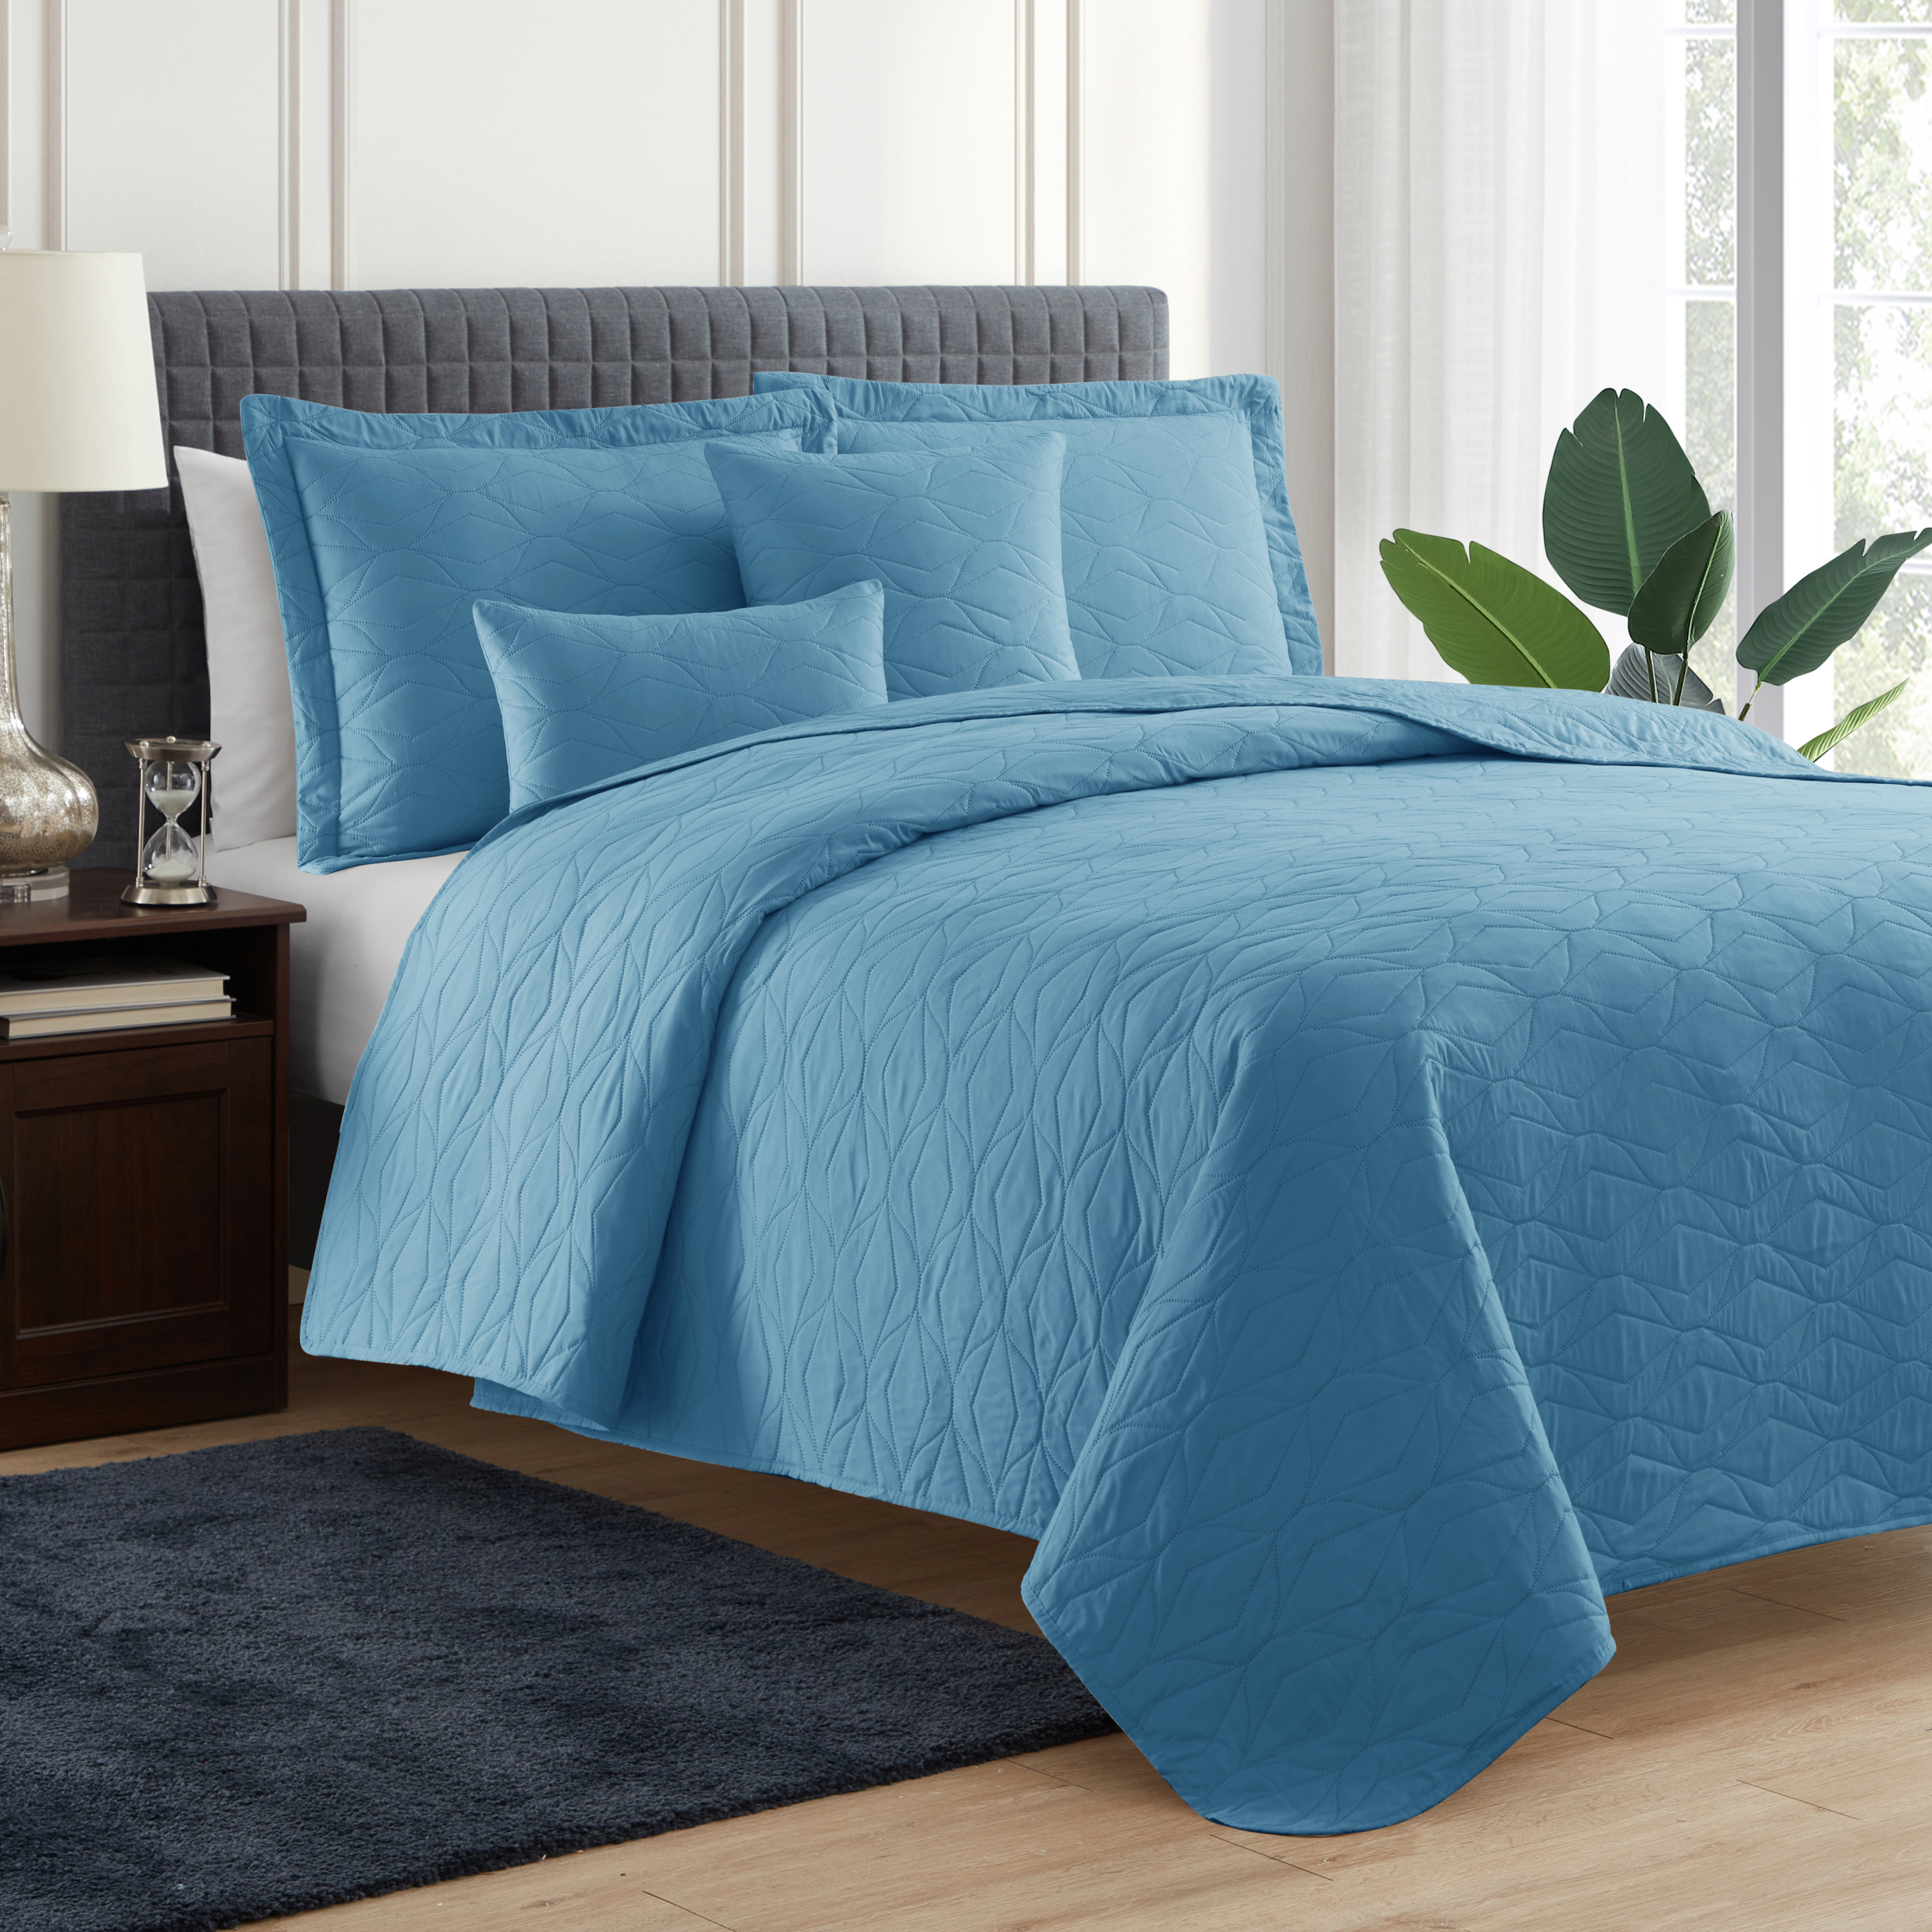 Clara Clark Quilt Set Queen Bedspread, 5-Piece Ellipse Weave Lightweight Coverlet, Blue Heaven - image 1 of 5